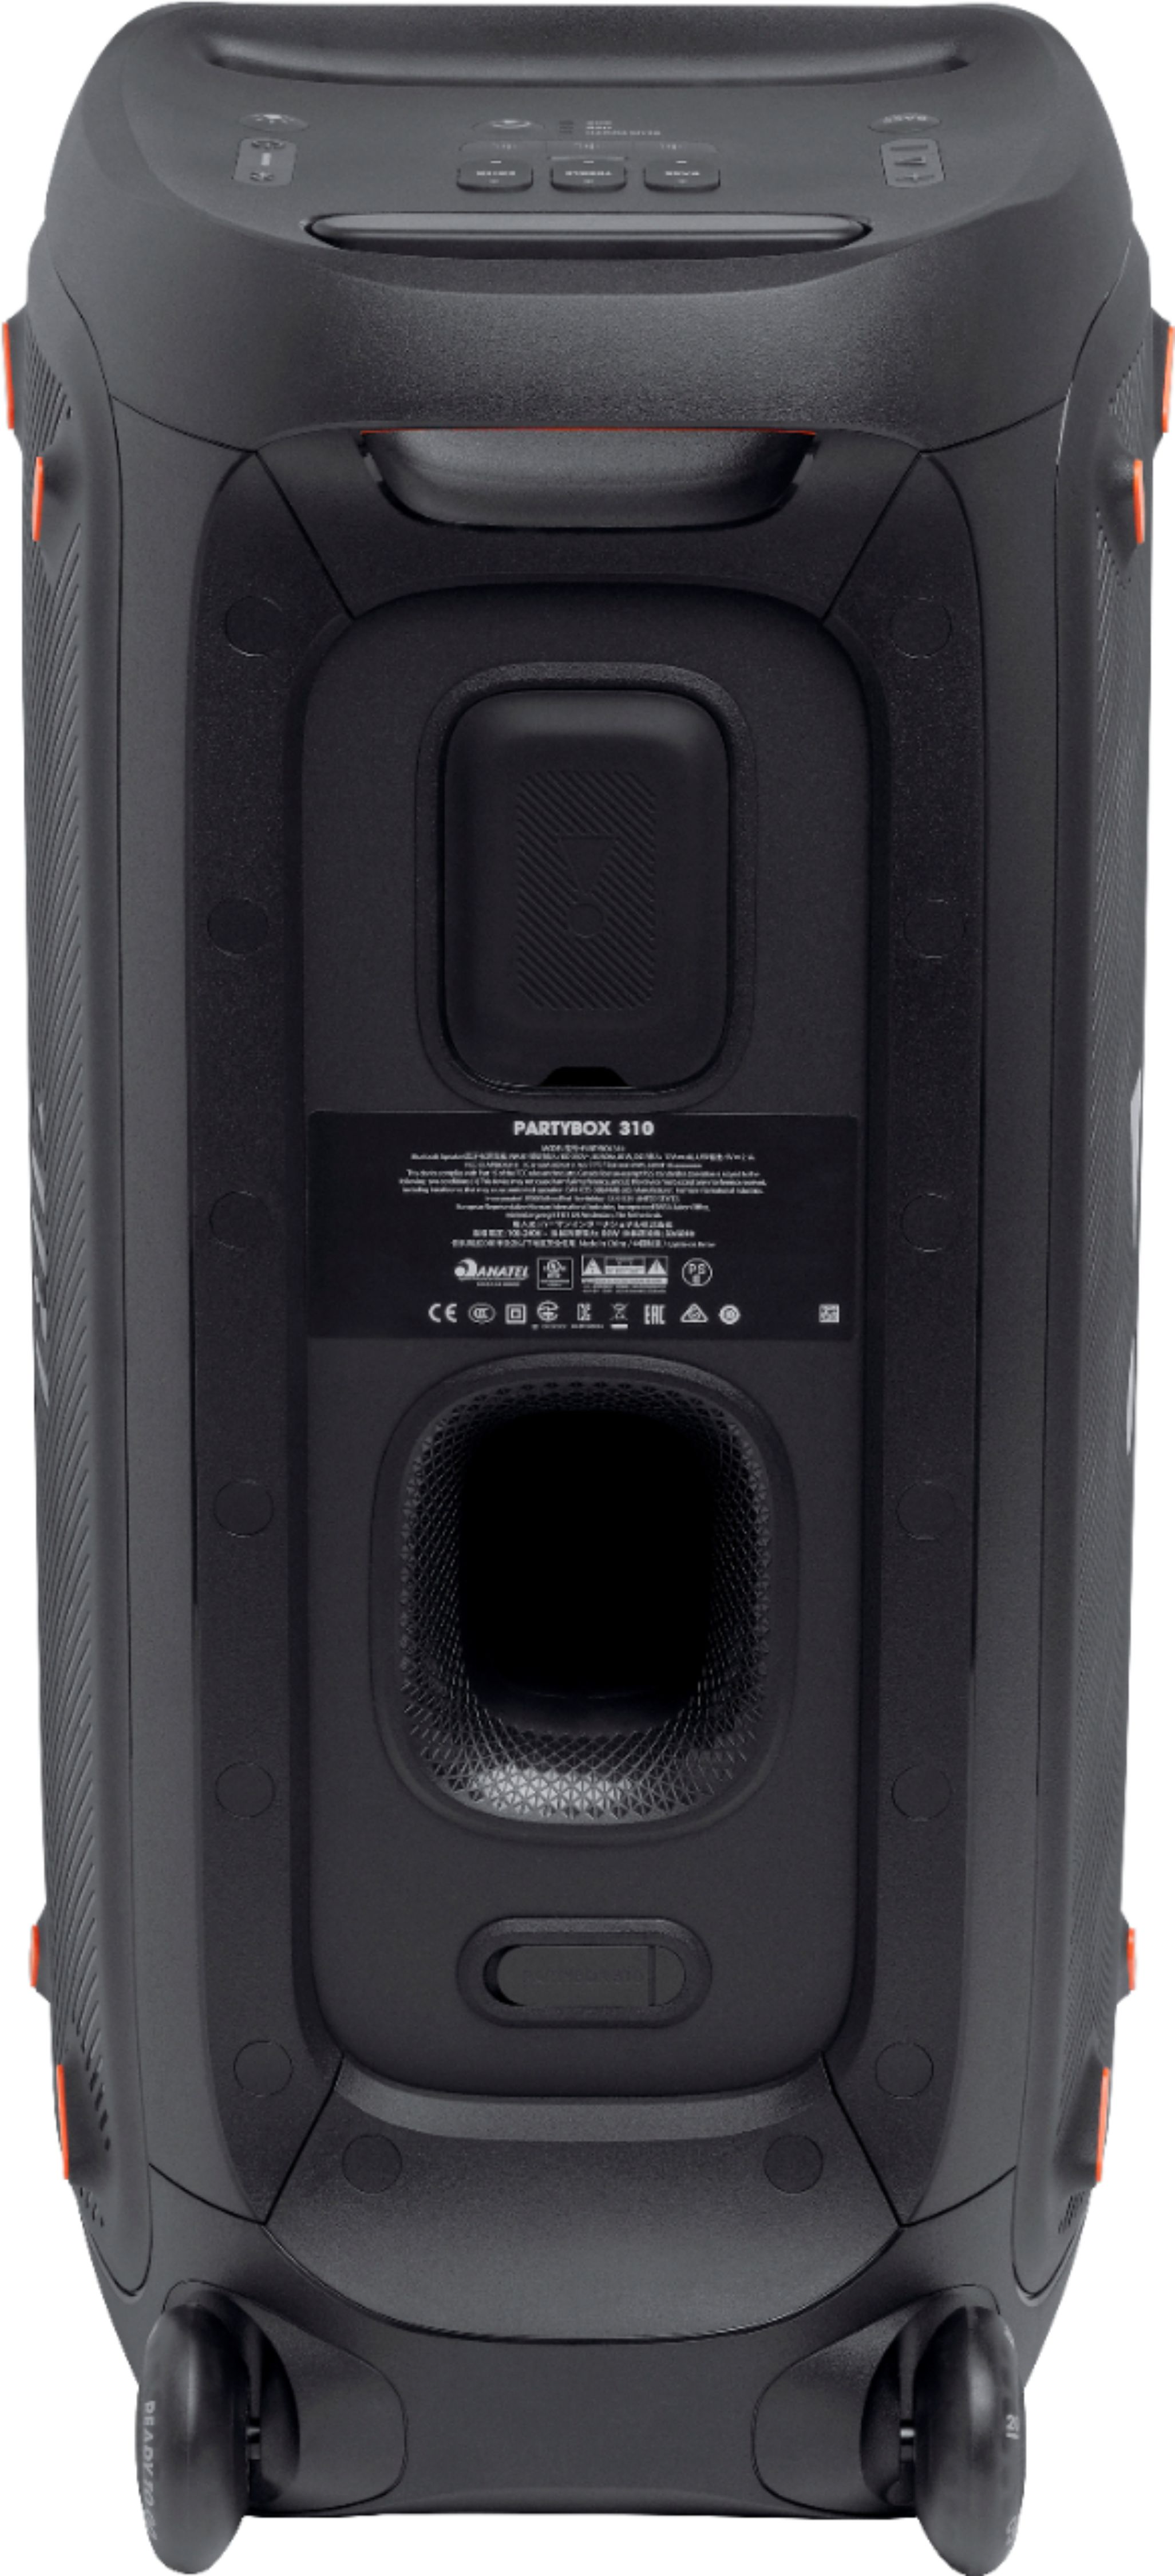 JBL PartyBox 310 Portable Party Speaker Black JBLPARTYBOX310AM 